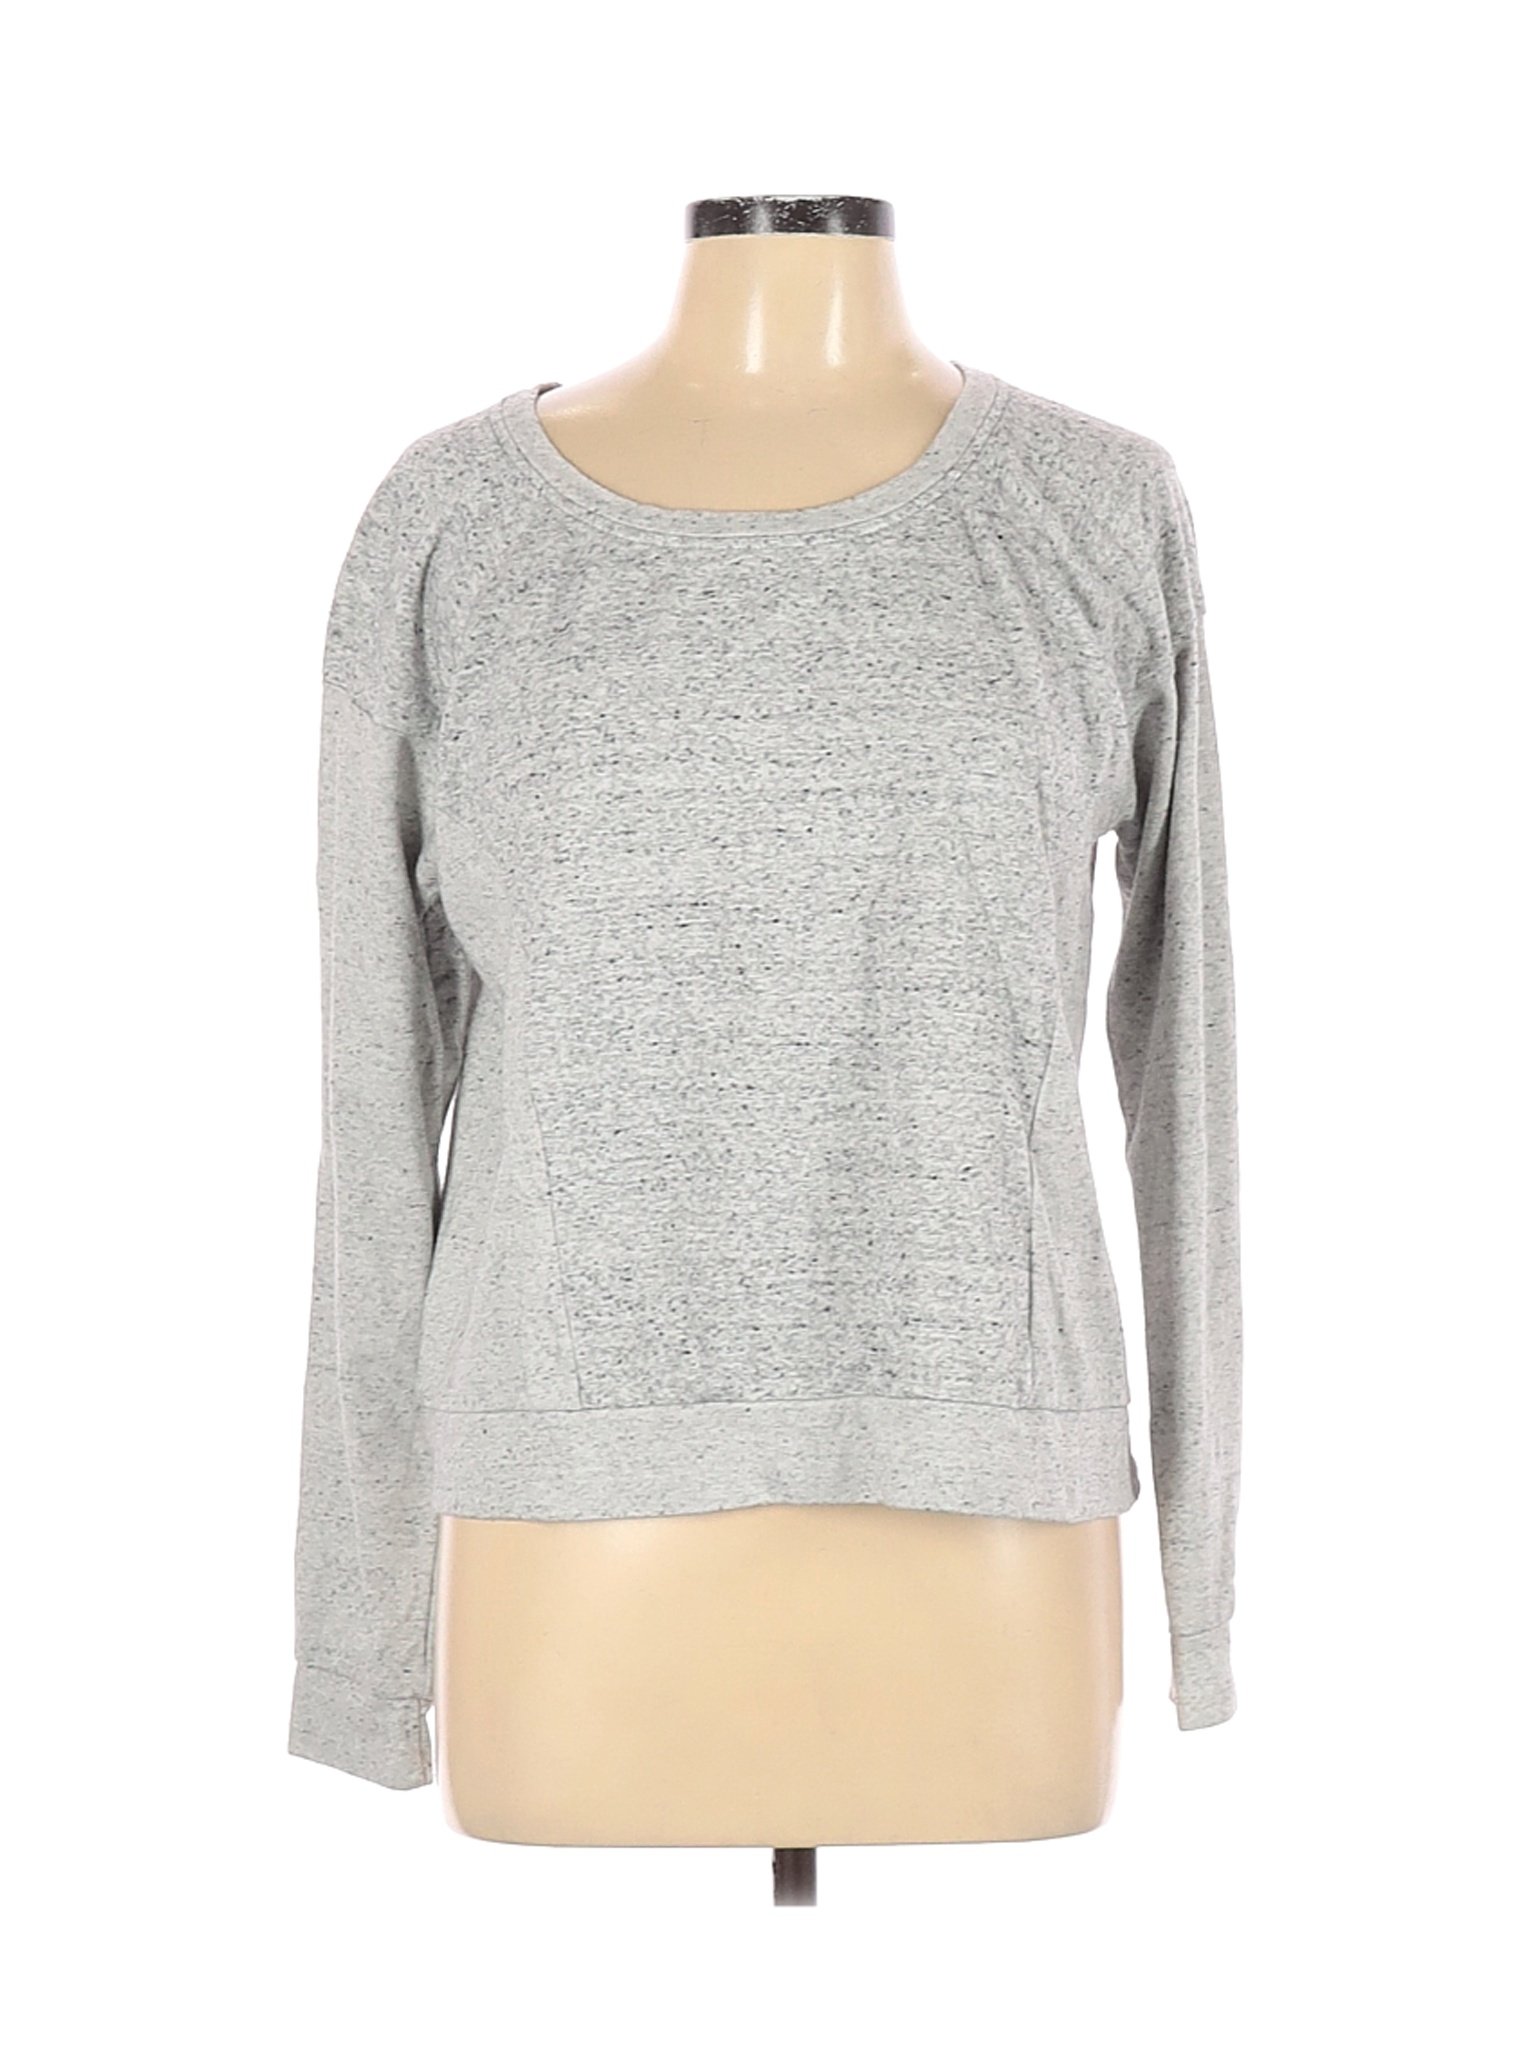 Abercrombie & Fitch Women Gray Sweatshirt L | eBay